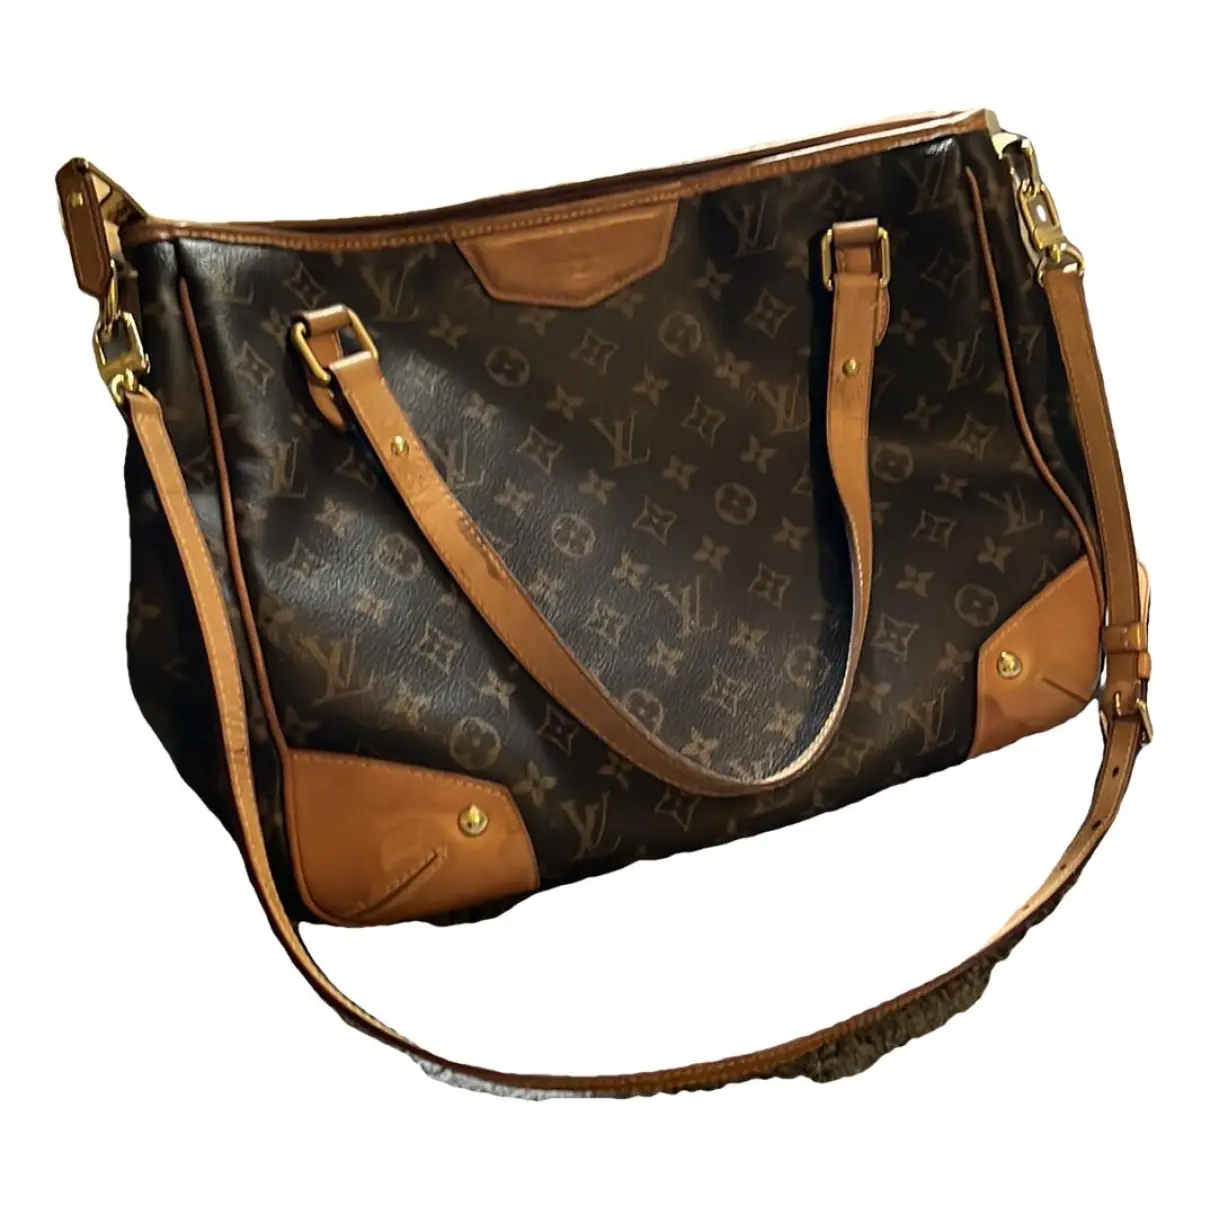 Estrela leather handbag Louis Vuitton